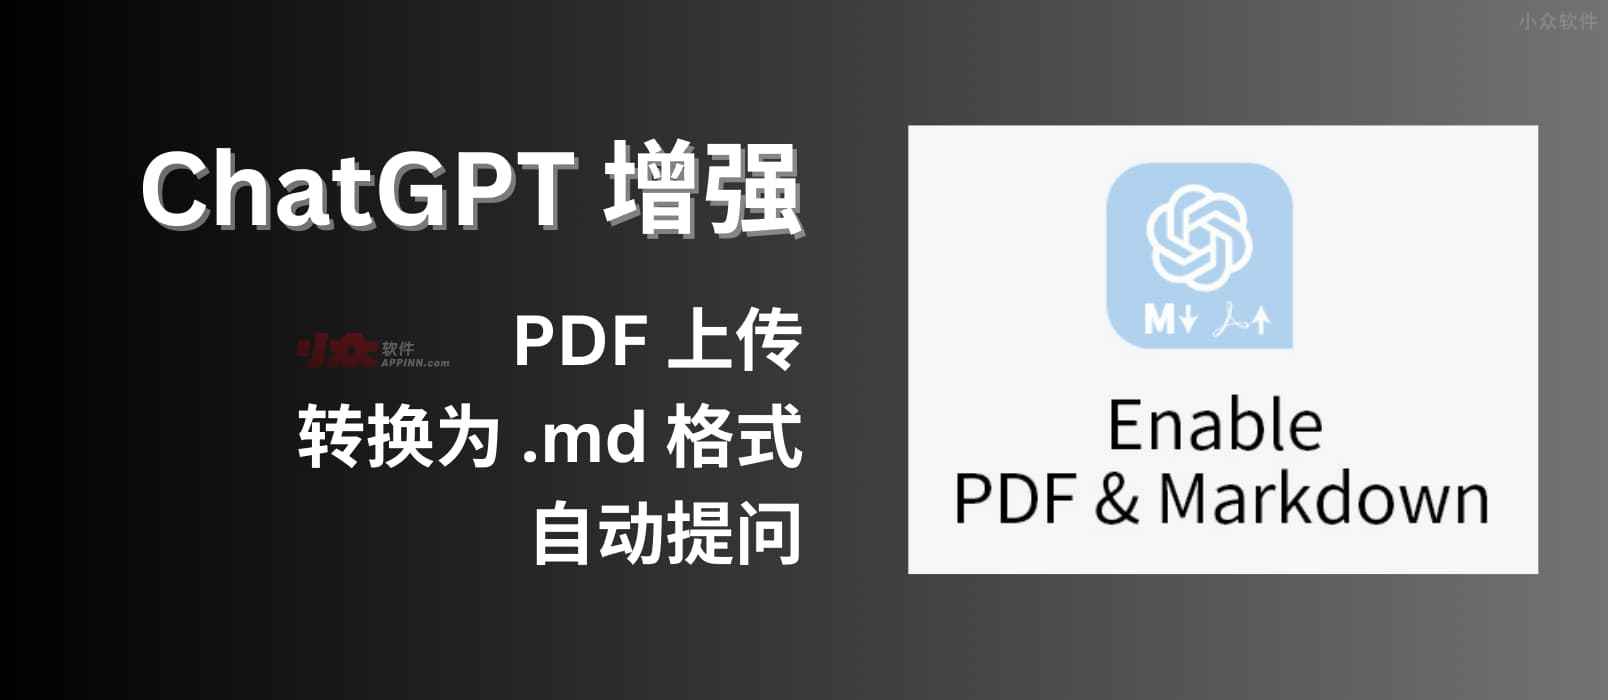 ChatGPT 增强：支持 PDF 上传、转换为 Markdown 格式，自动提问[Chrome 开发中]